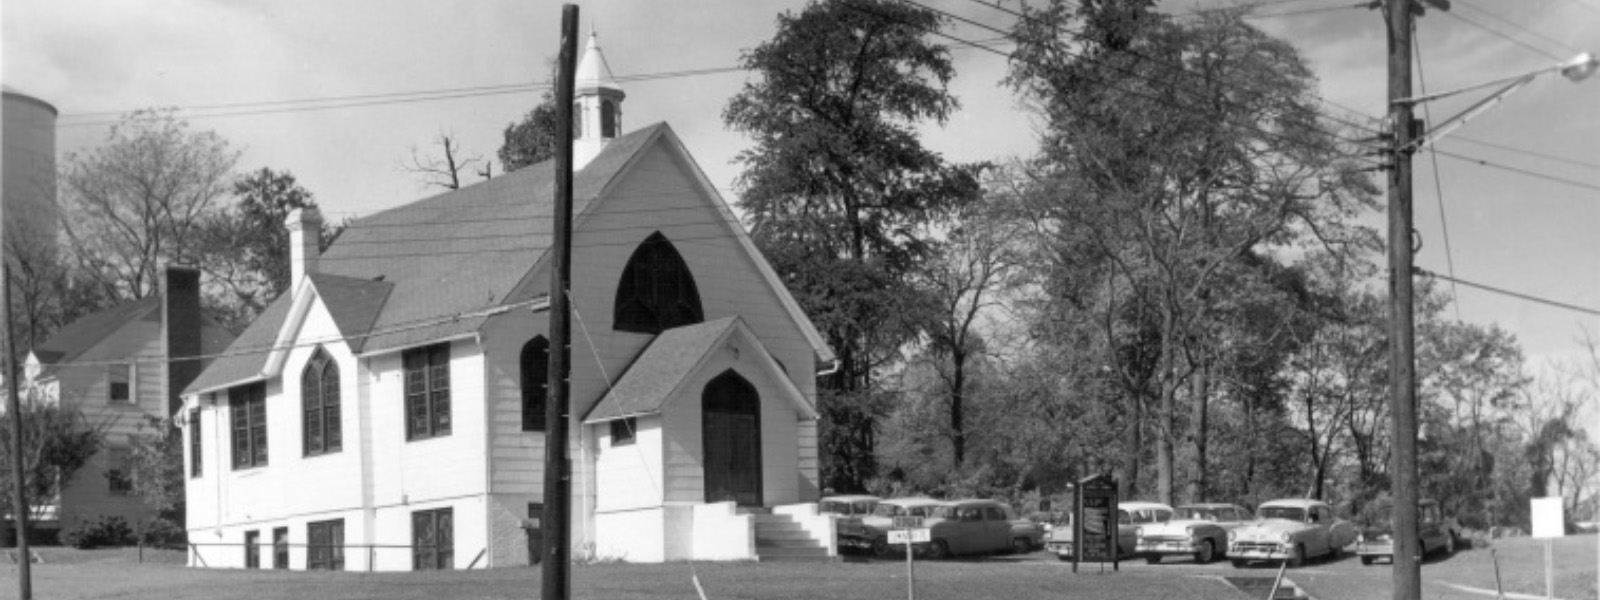 Mount Zion Methodist Episcopal Church exterior